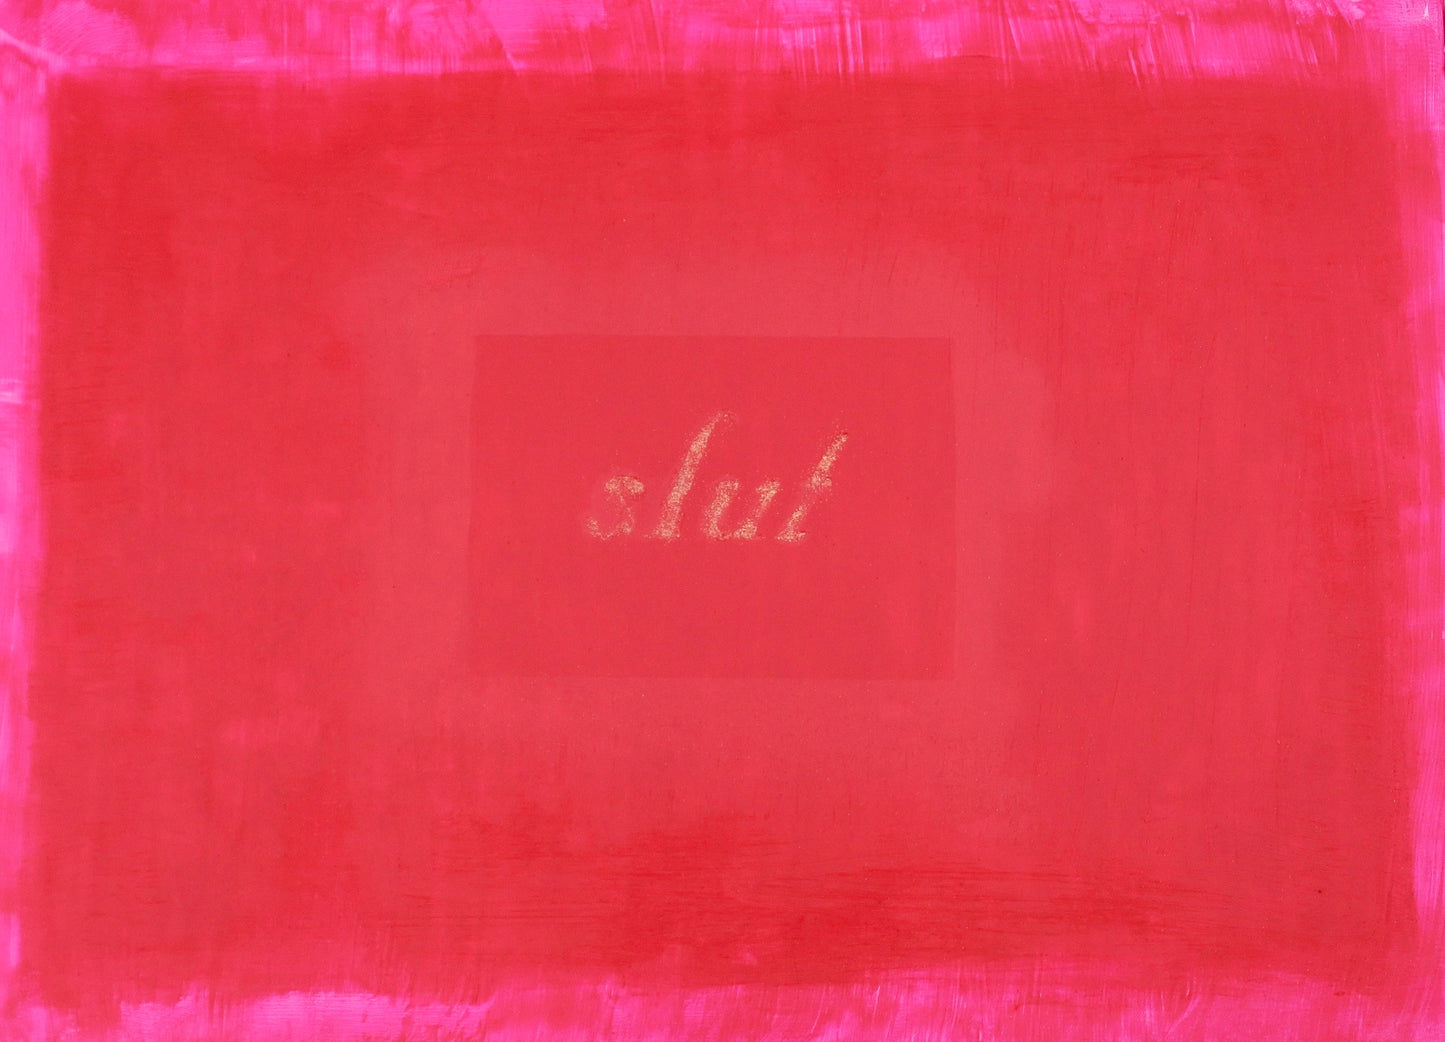 Slut painting